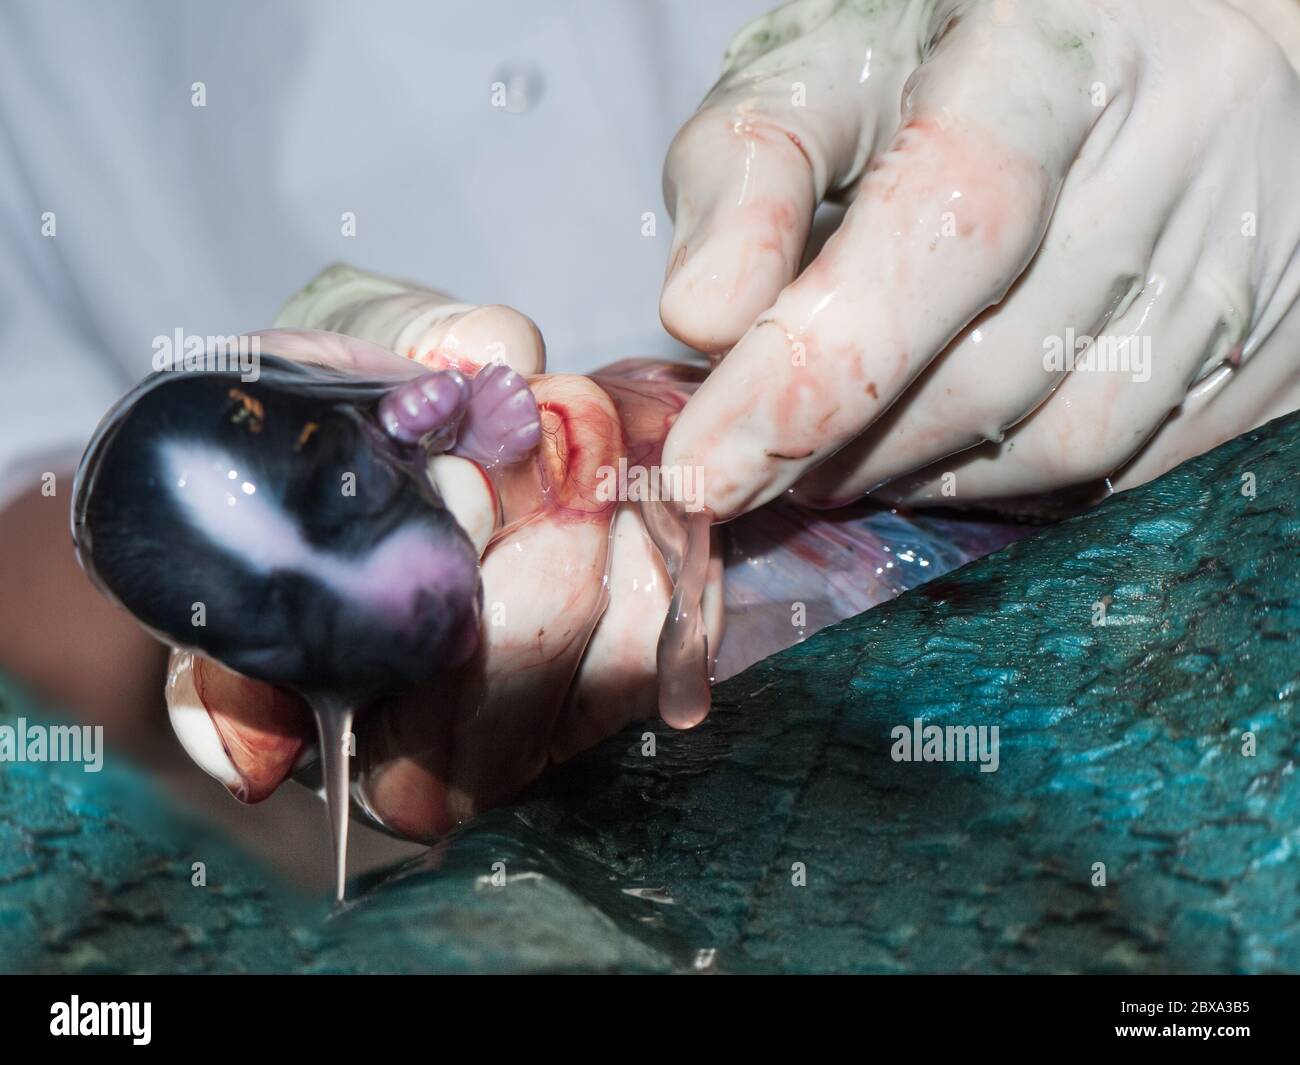 Vet rimuove un cucciolo dall'utero durante una sezione cesareo in un cane. La carne è rotta, il liquido amniotico scorre fuori. Mettere a fuoco il cavo ombelicale Foto Stock